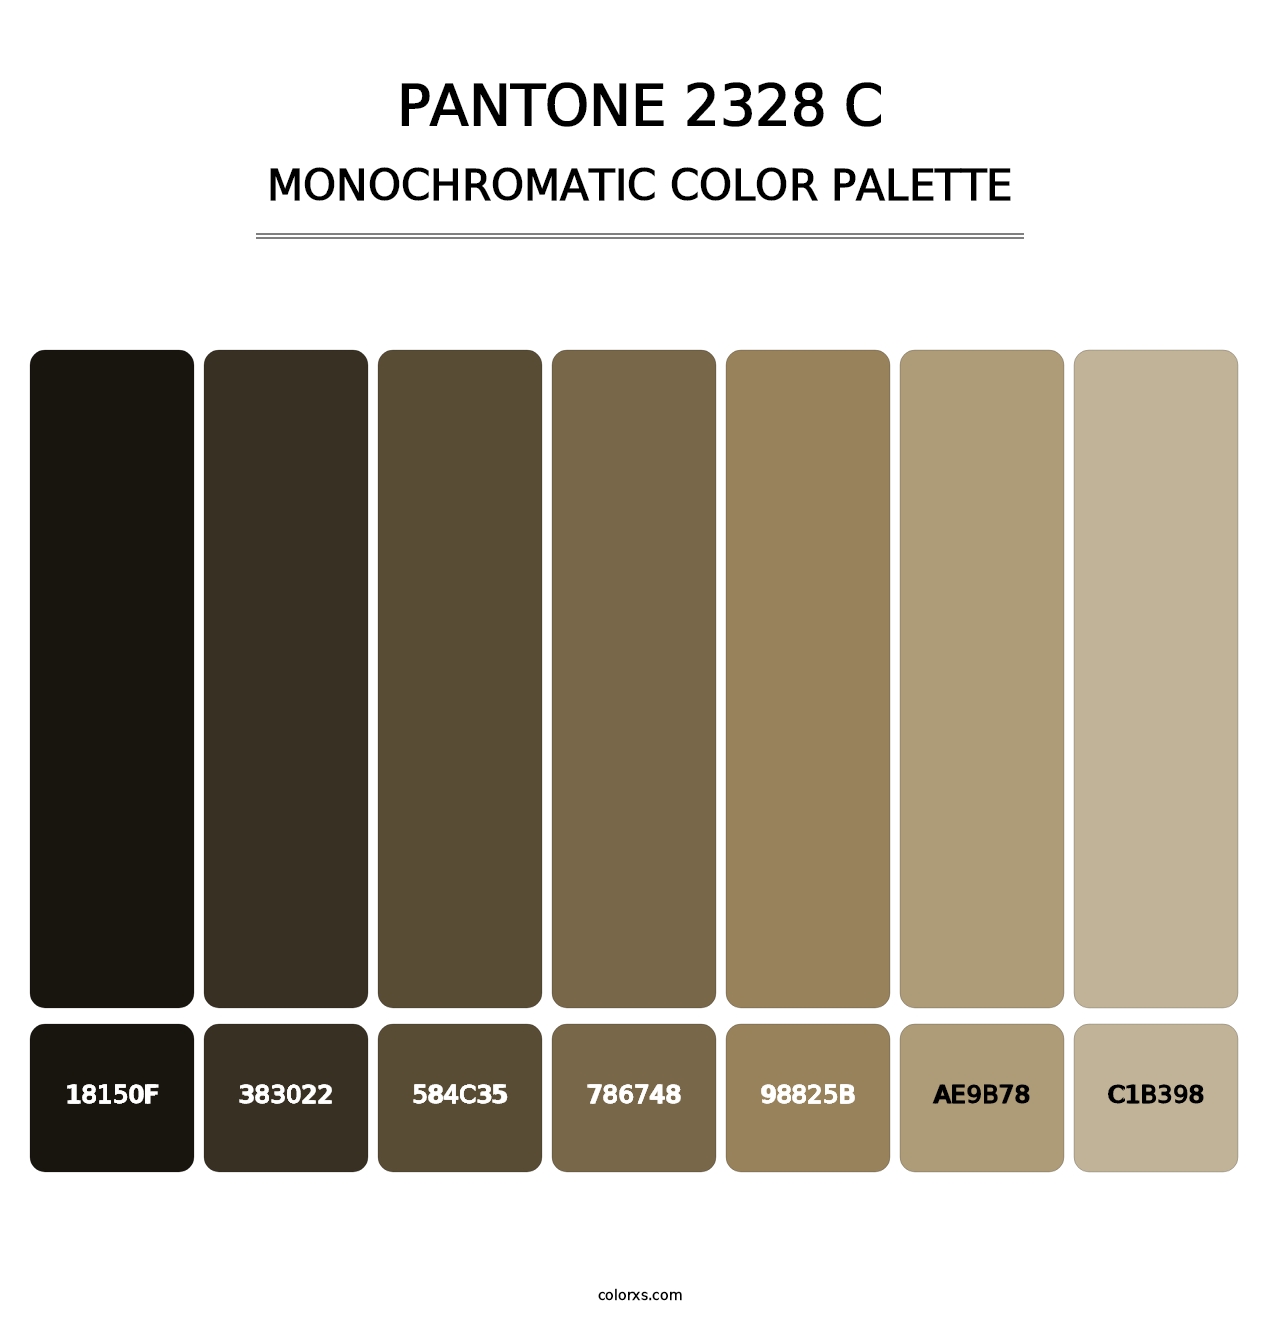 PANTONE 2328 C - Monochromatic Color Palette